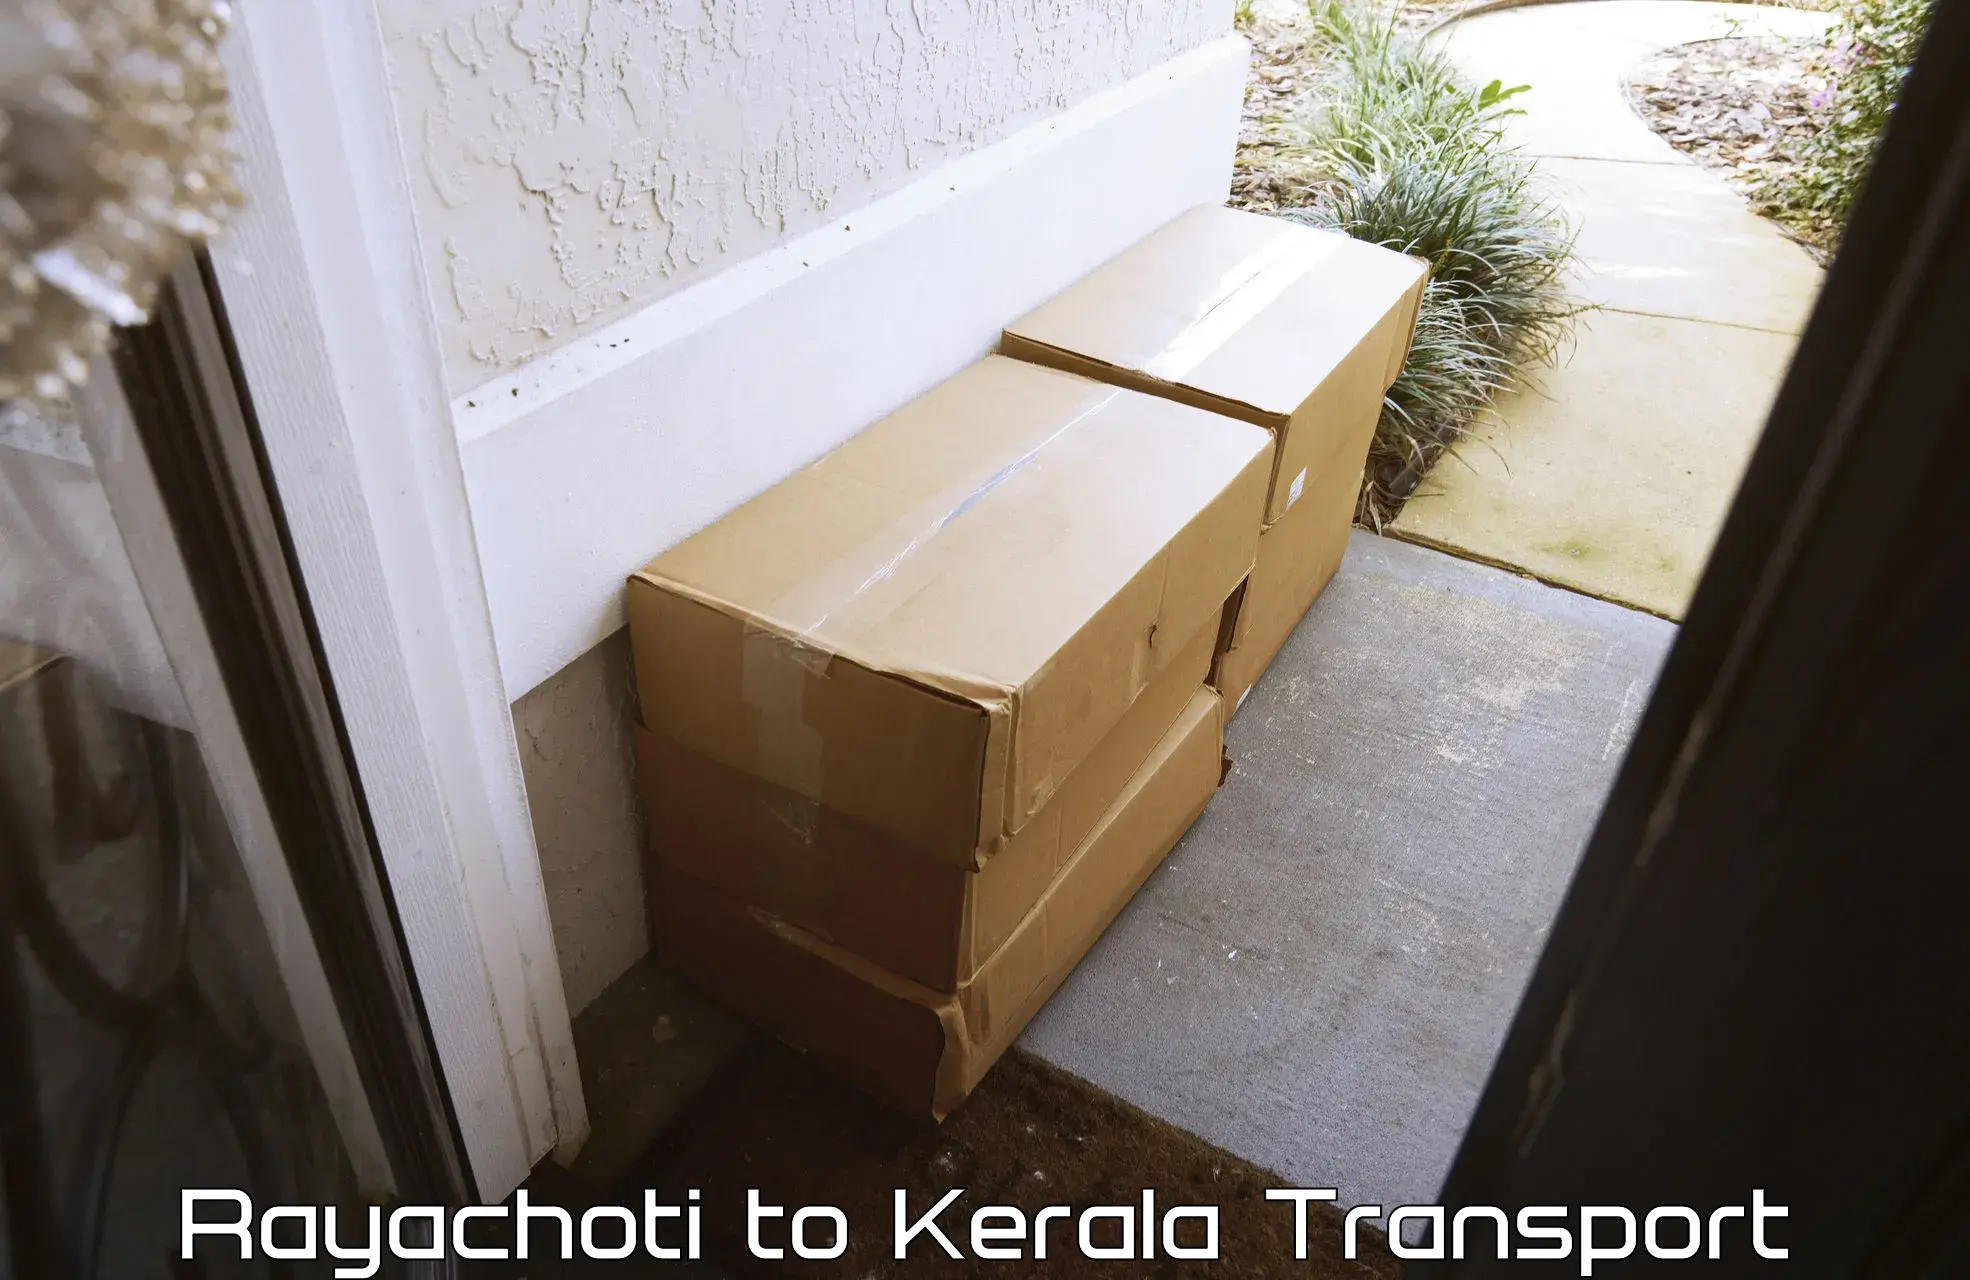 Luggage transport services Rayachoti to Vaikom